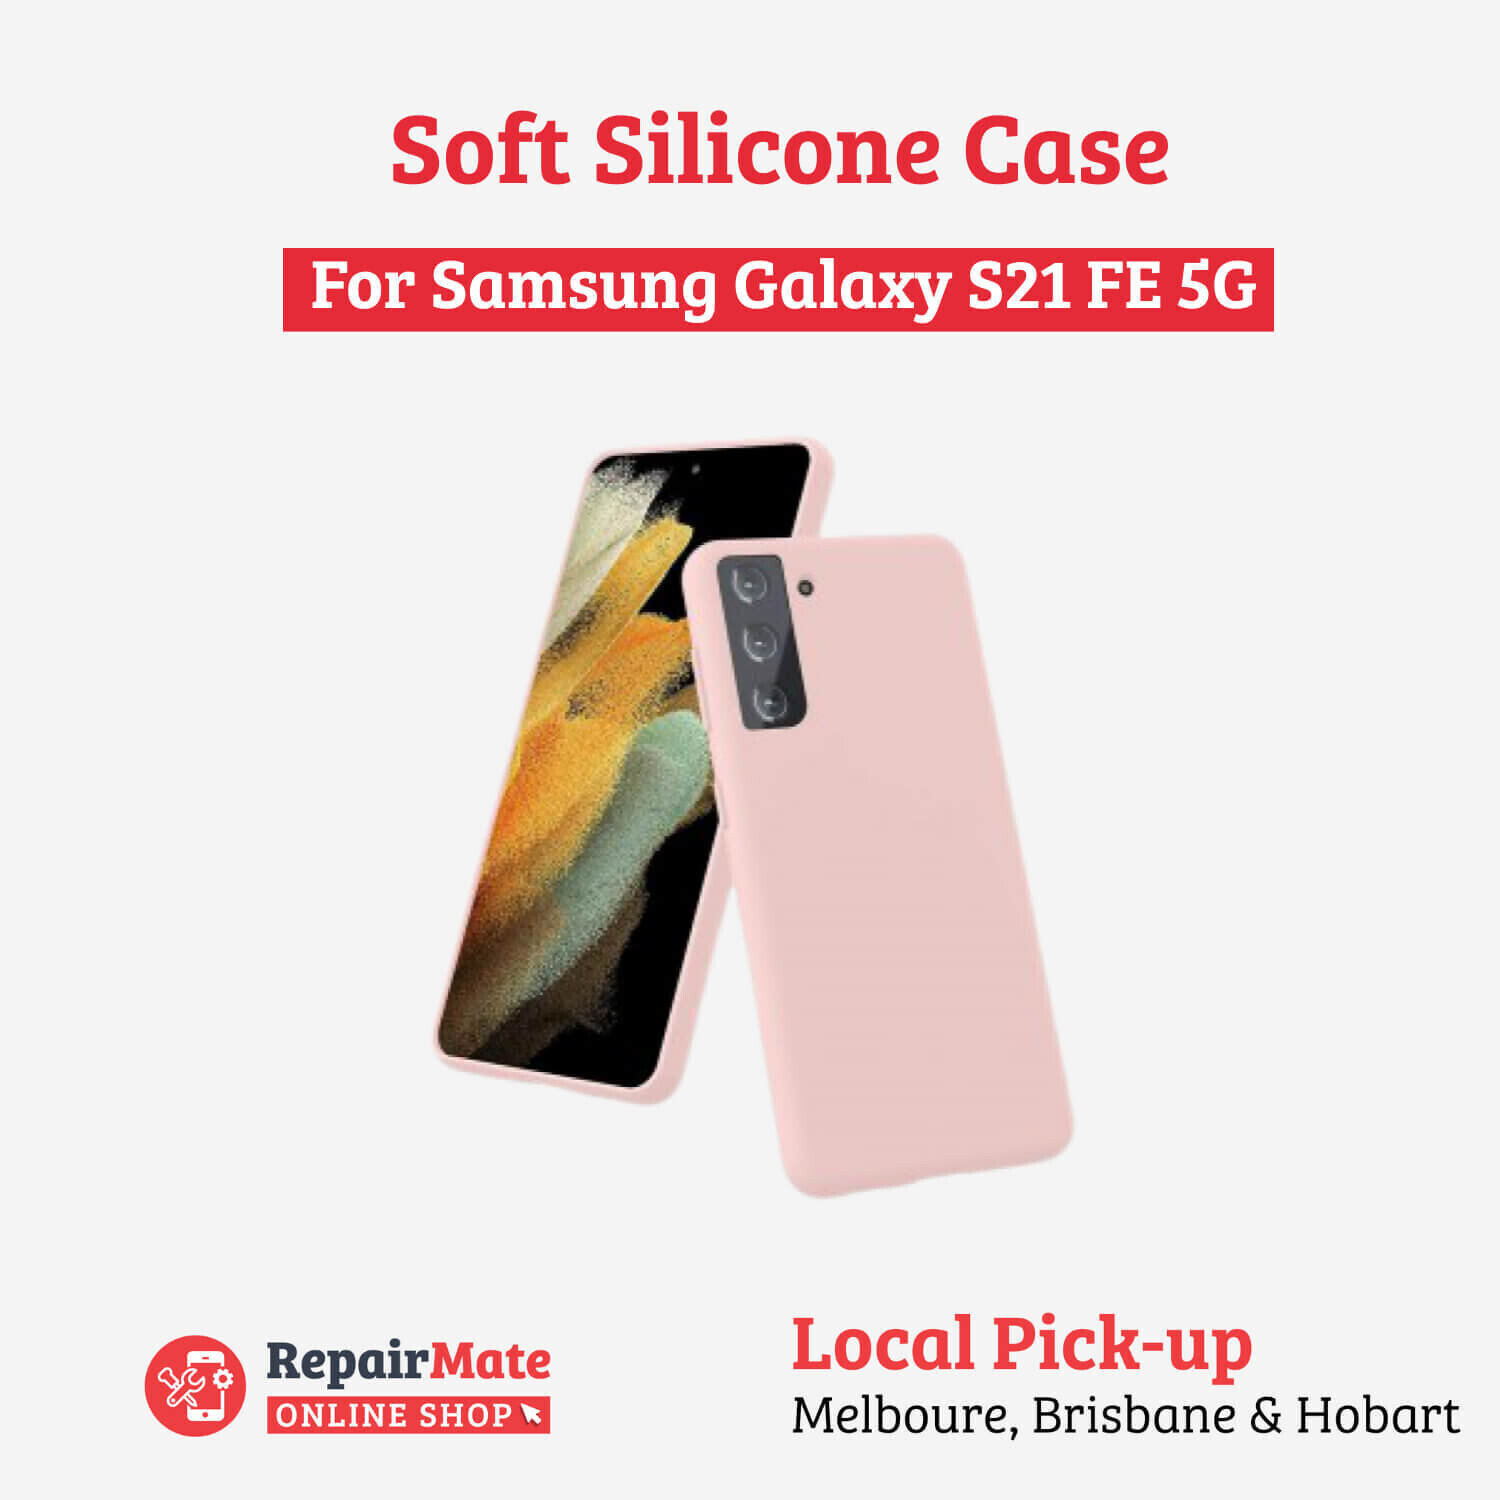 Samsung Galaxy S21 FE 5G Soft Silicone Case